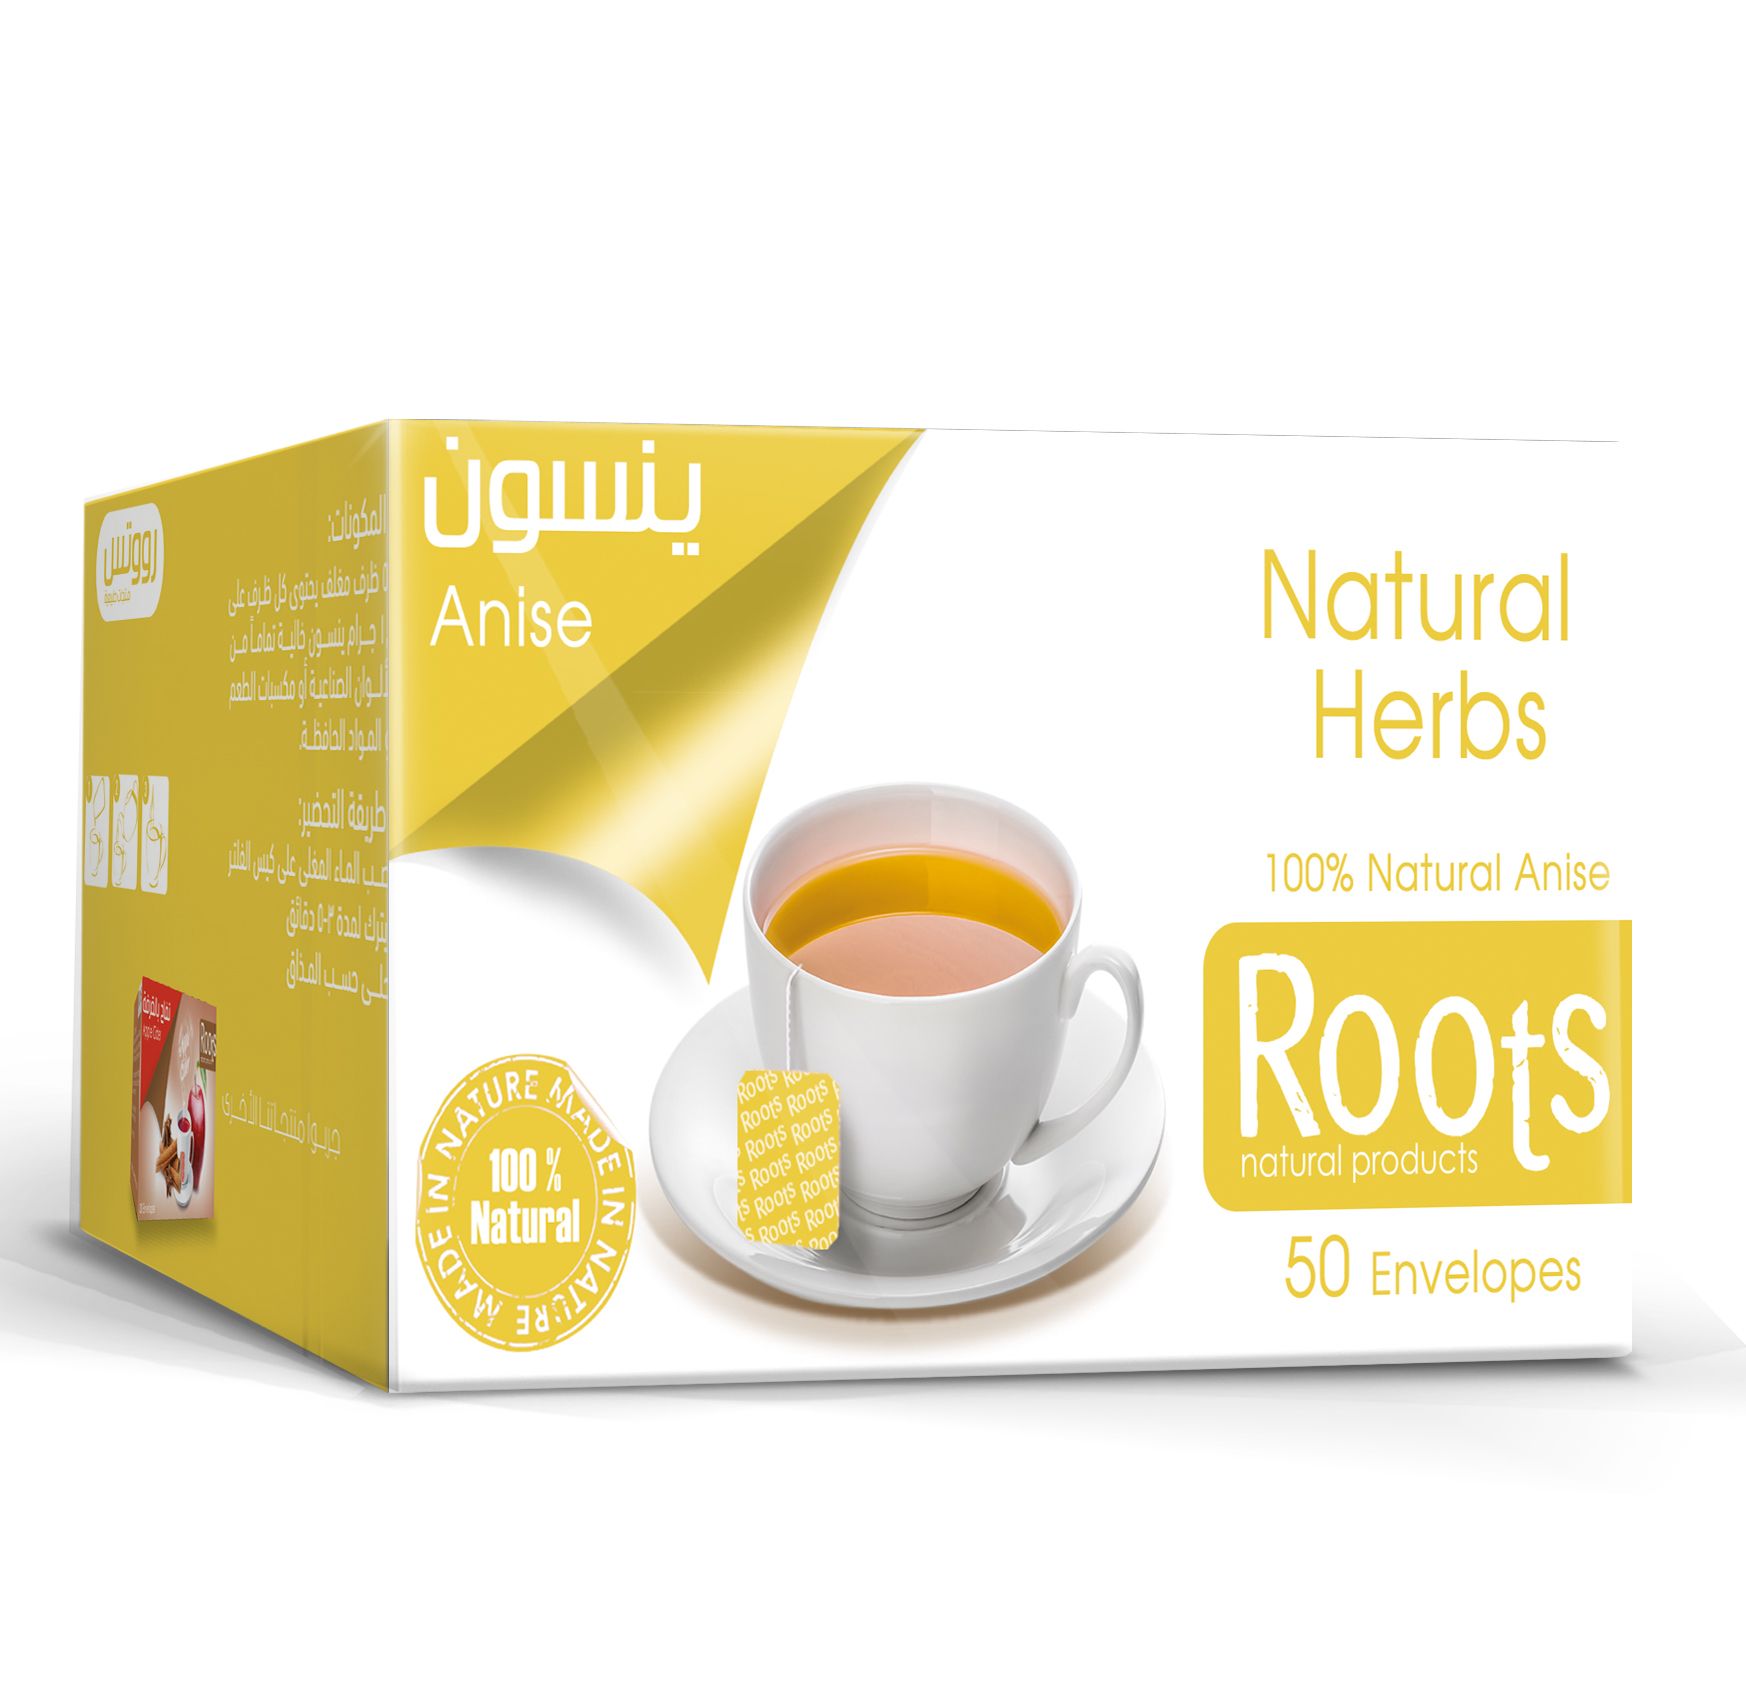 Roots Apple Juice 290 ML 6 packs